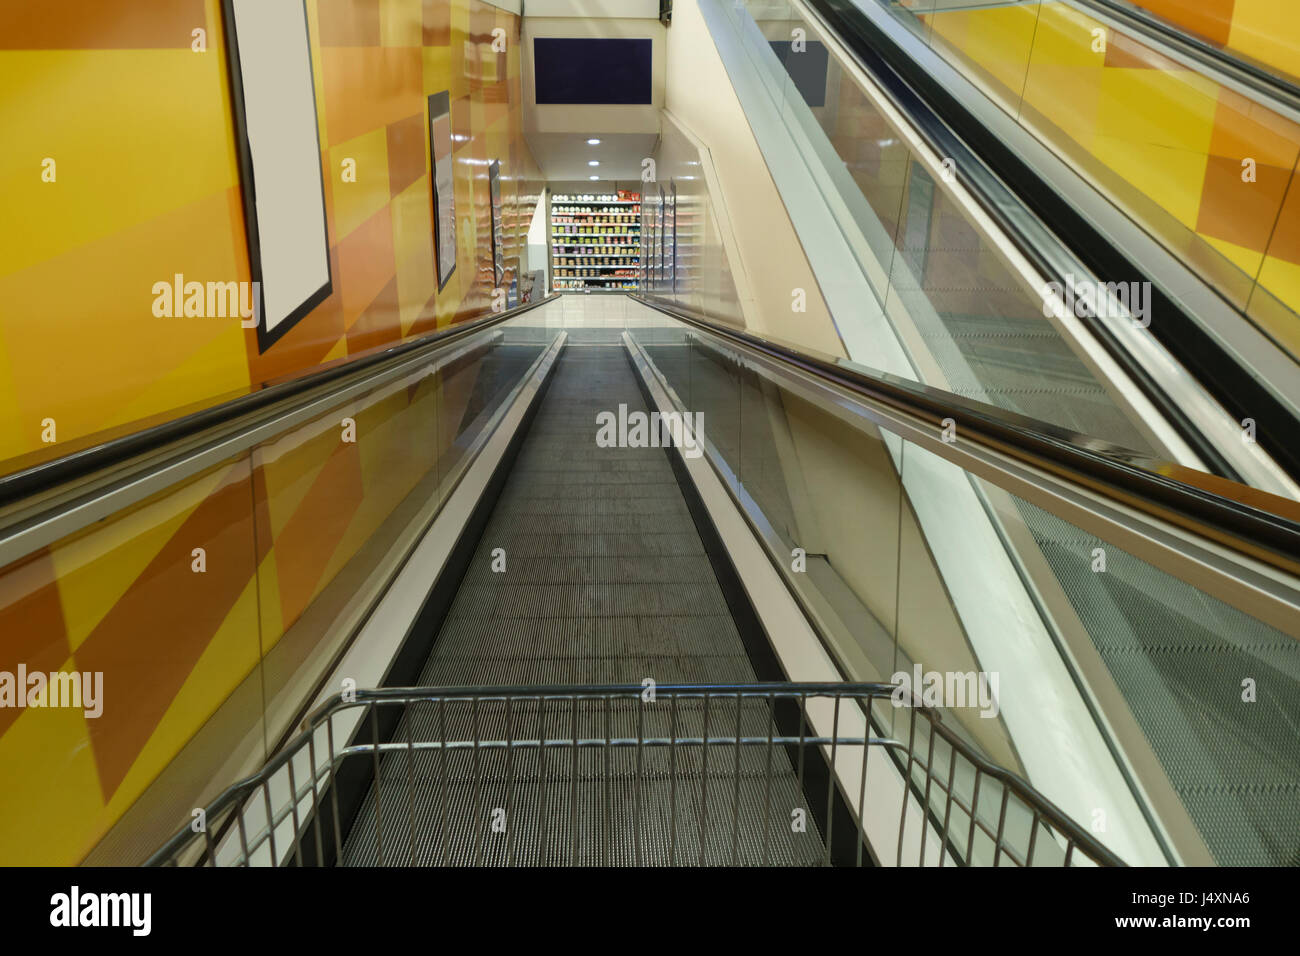 Förderband und Einkaufswagen in einem Supermarkt-Eingang Stockfoto